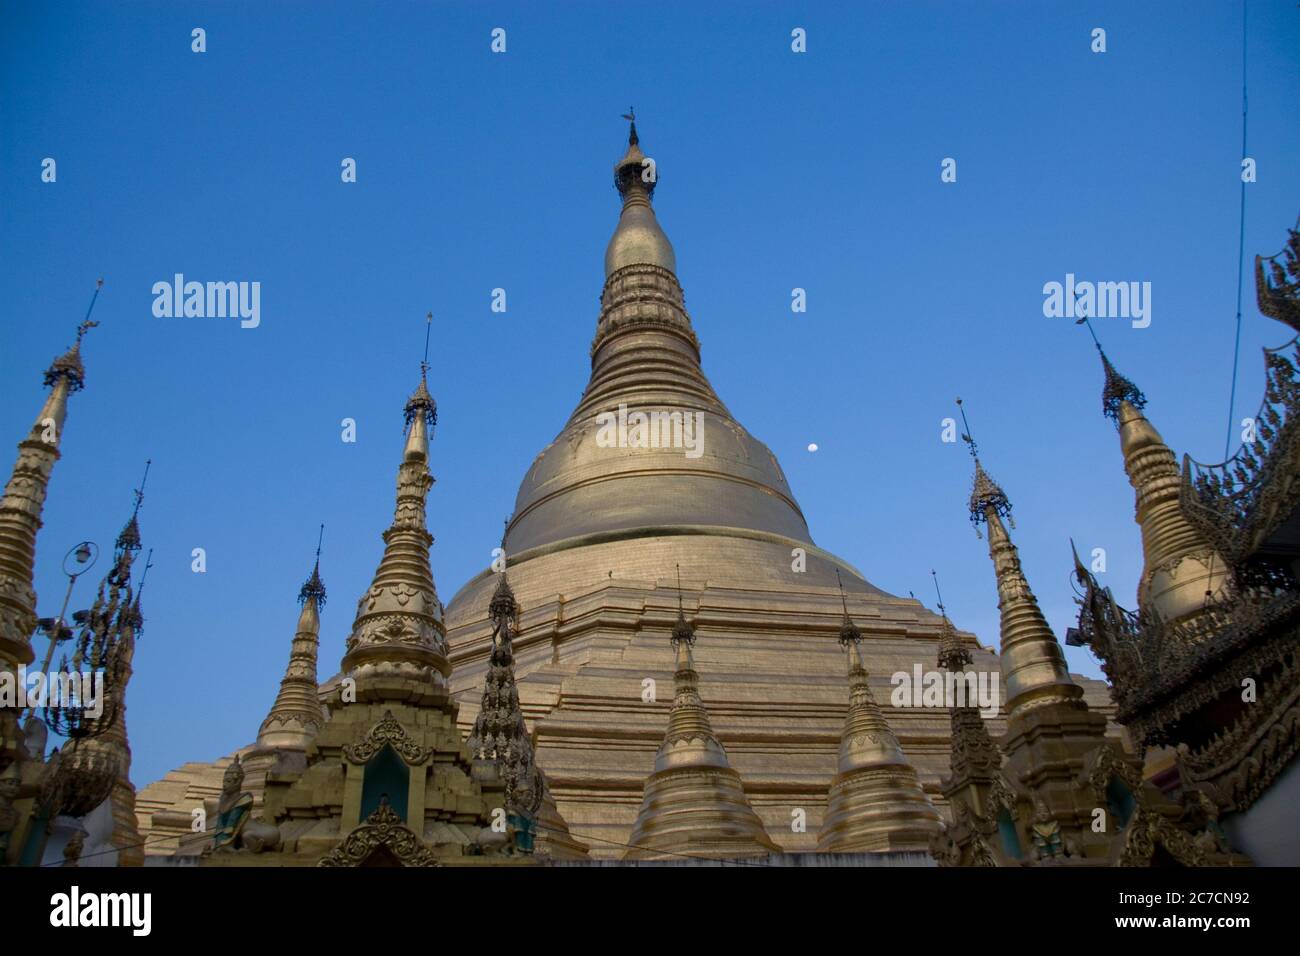 Yangon, capital of Myanmar Stock Photo